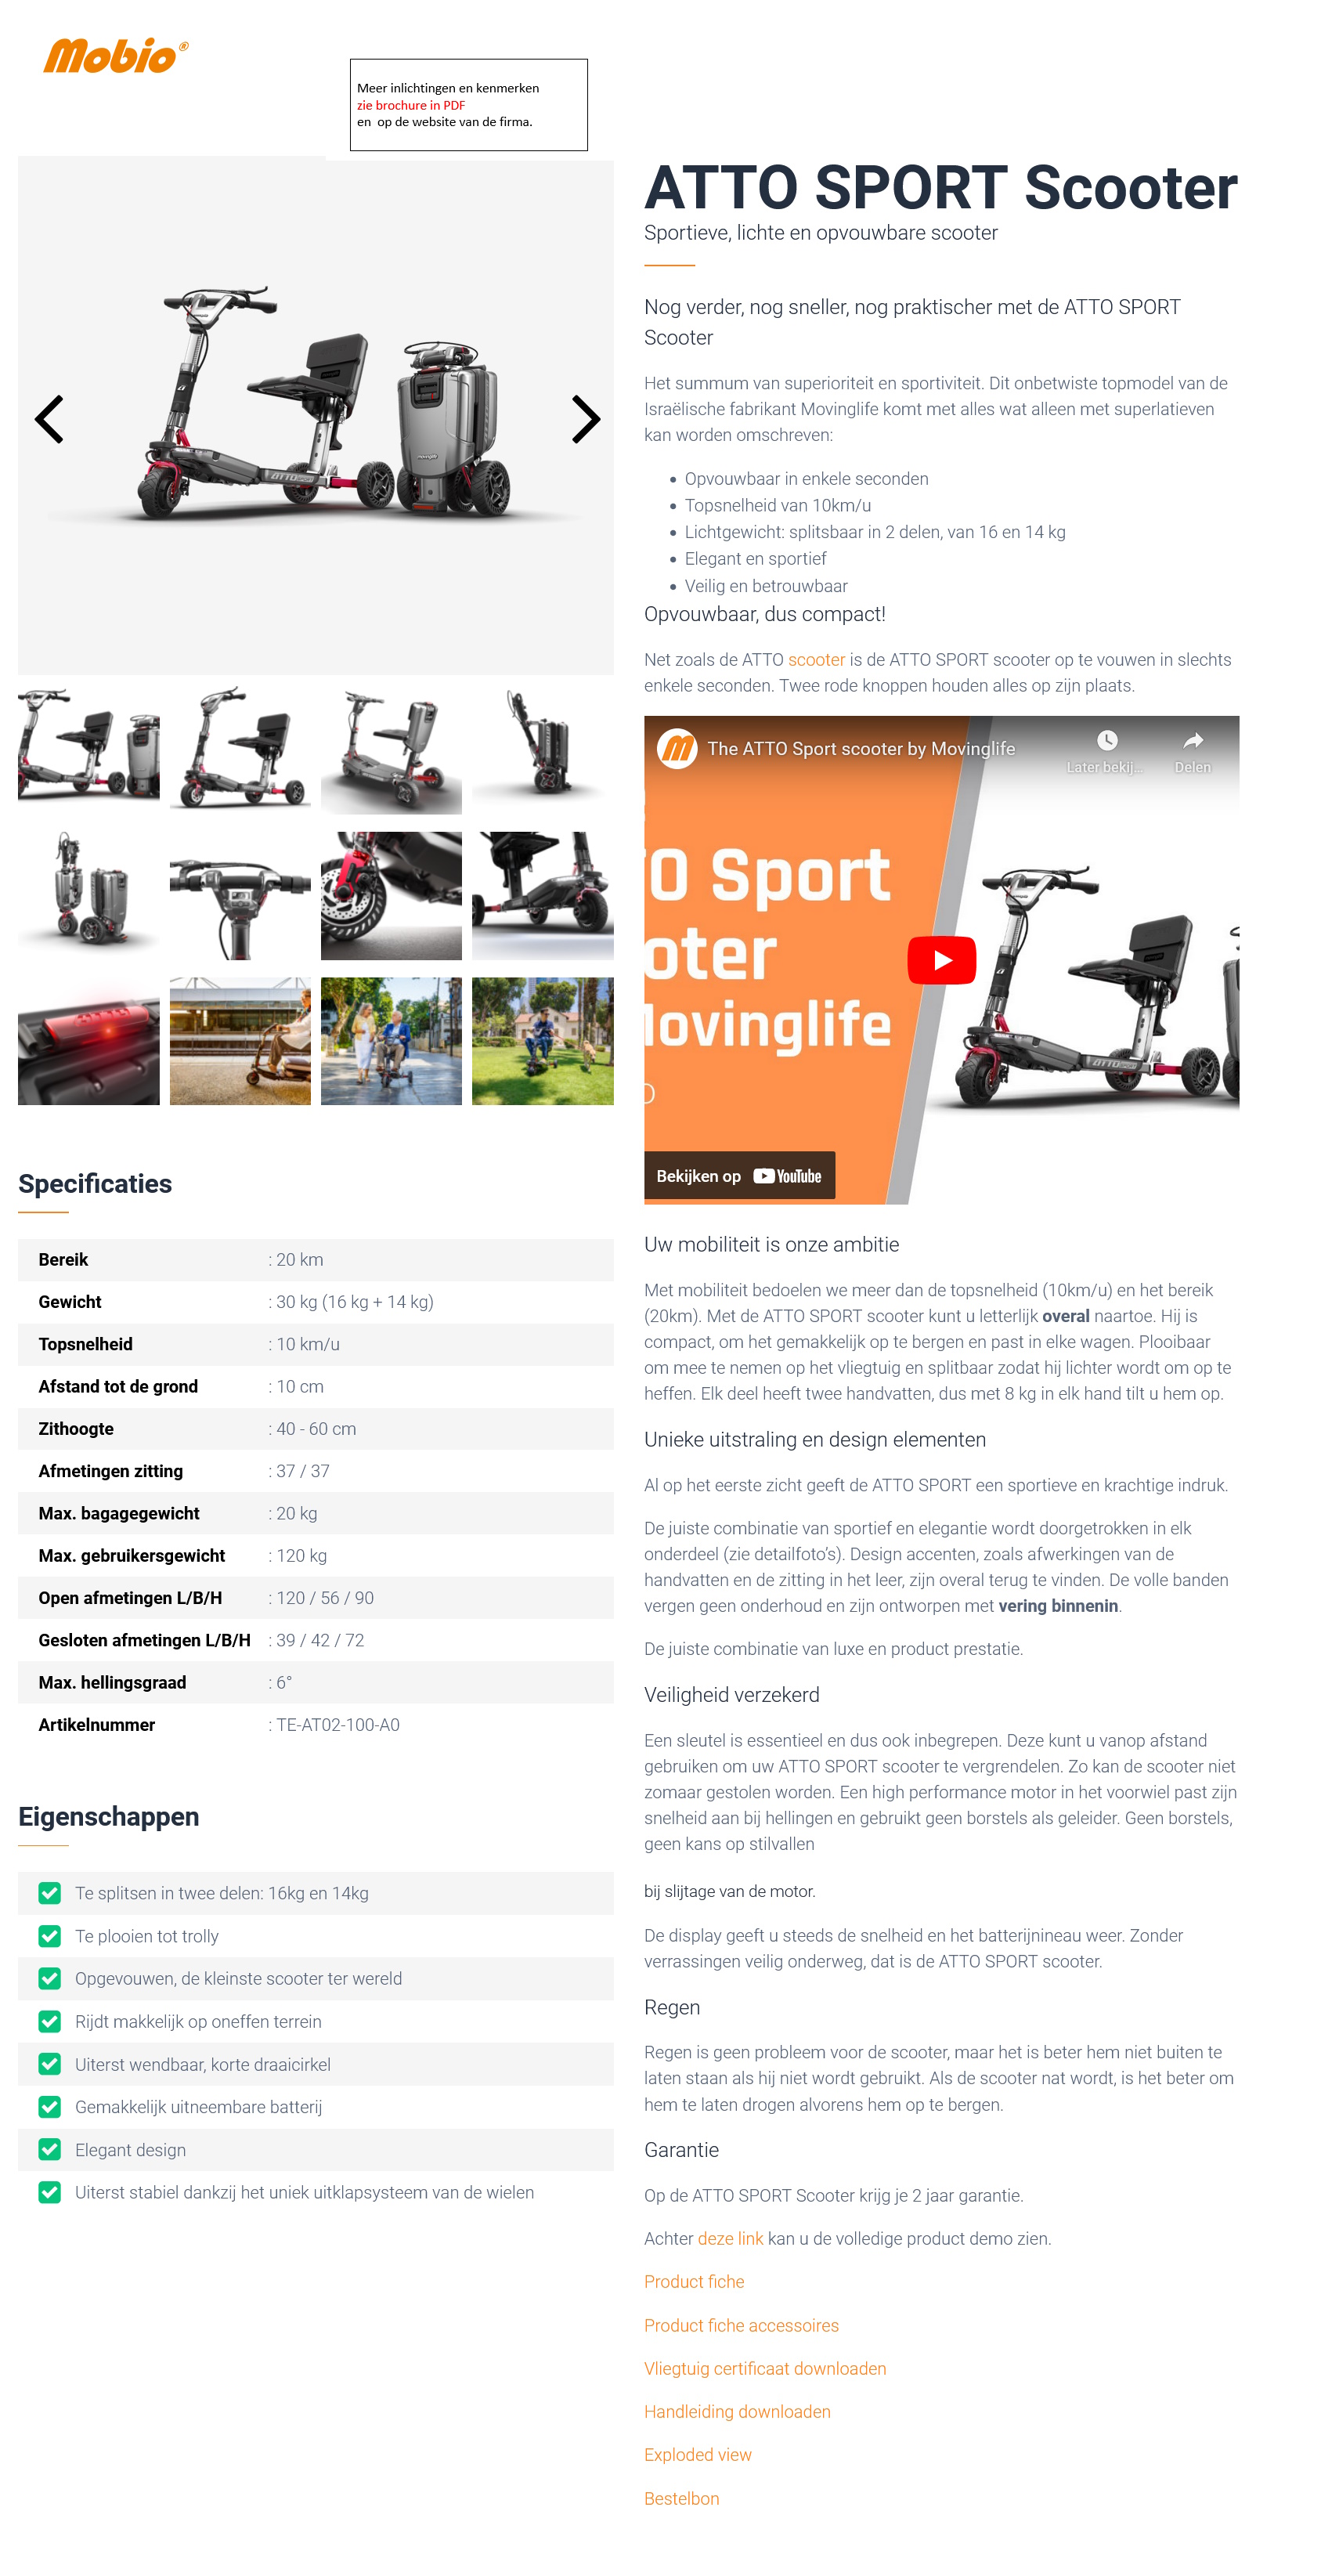 toegevoegd document 4 van ATTO Sport opvouwbaar en makkelijk mee te nemen 